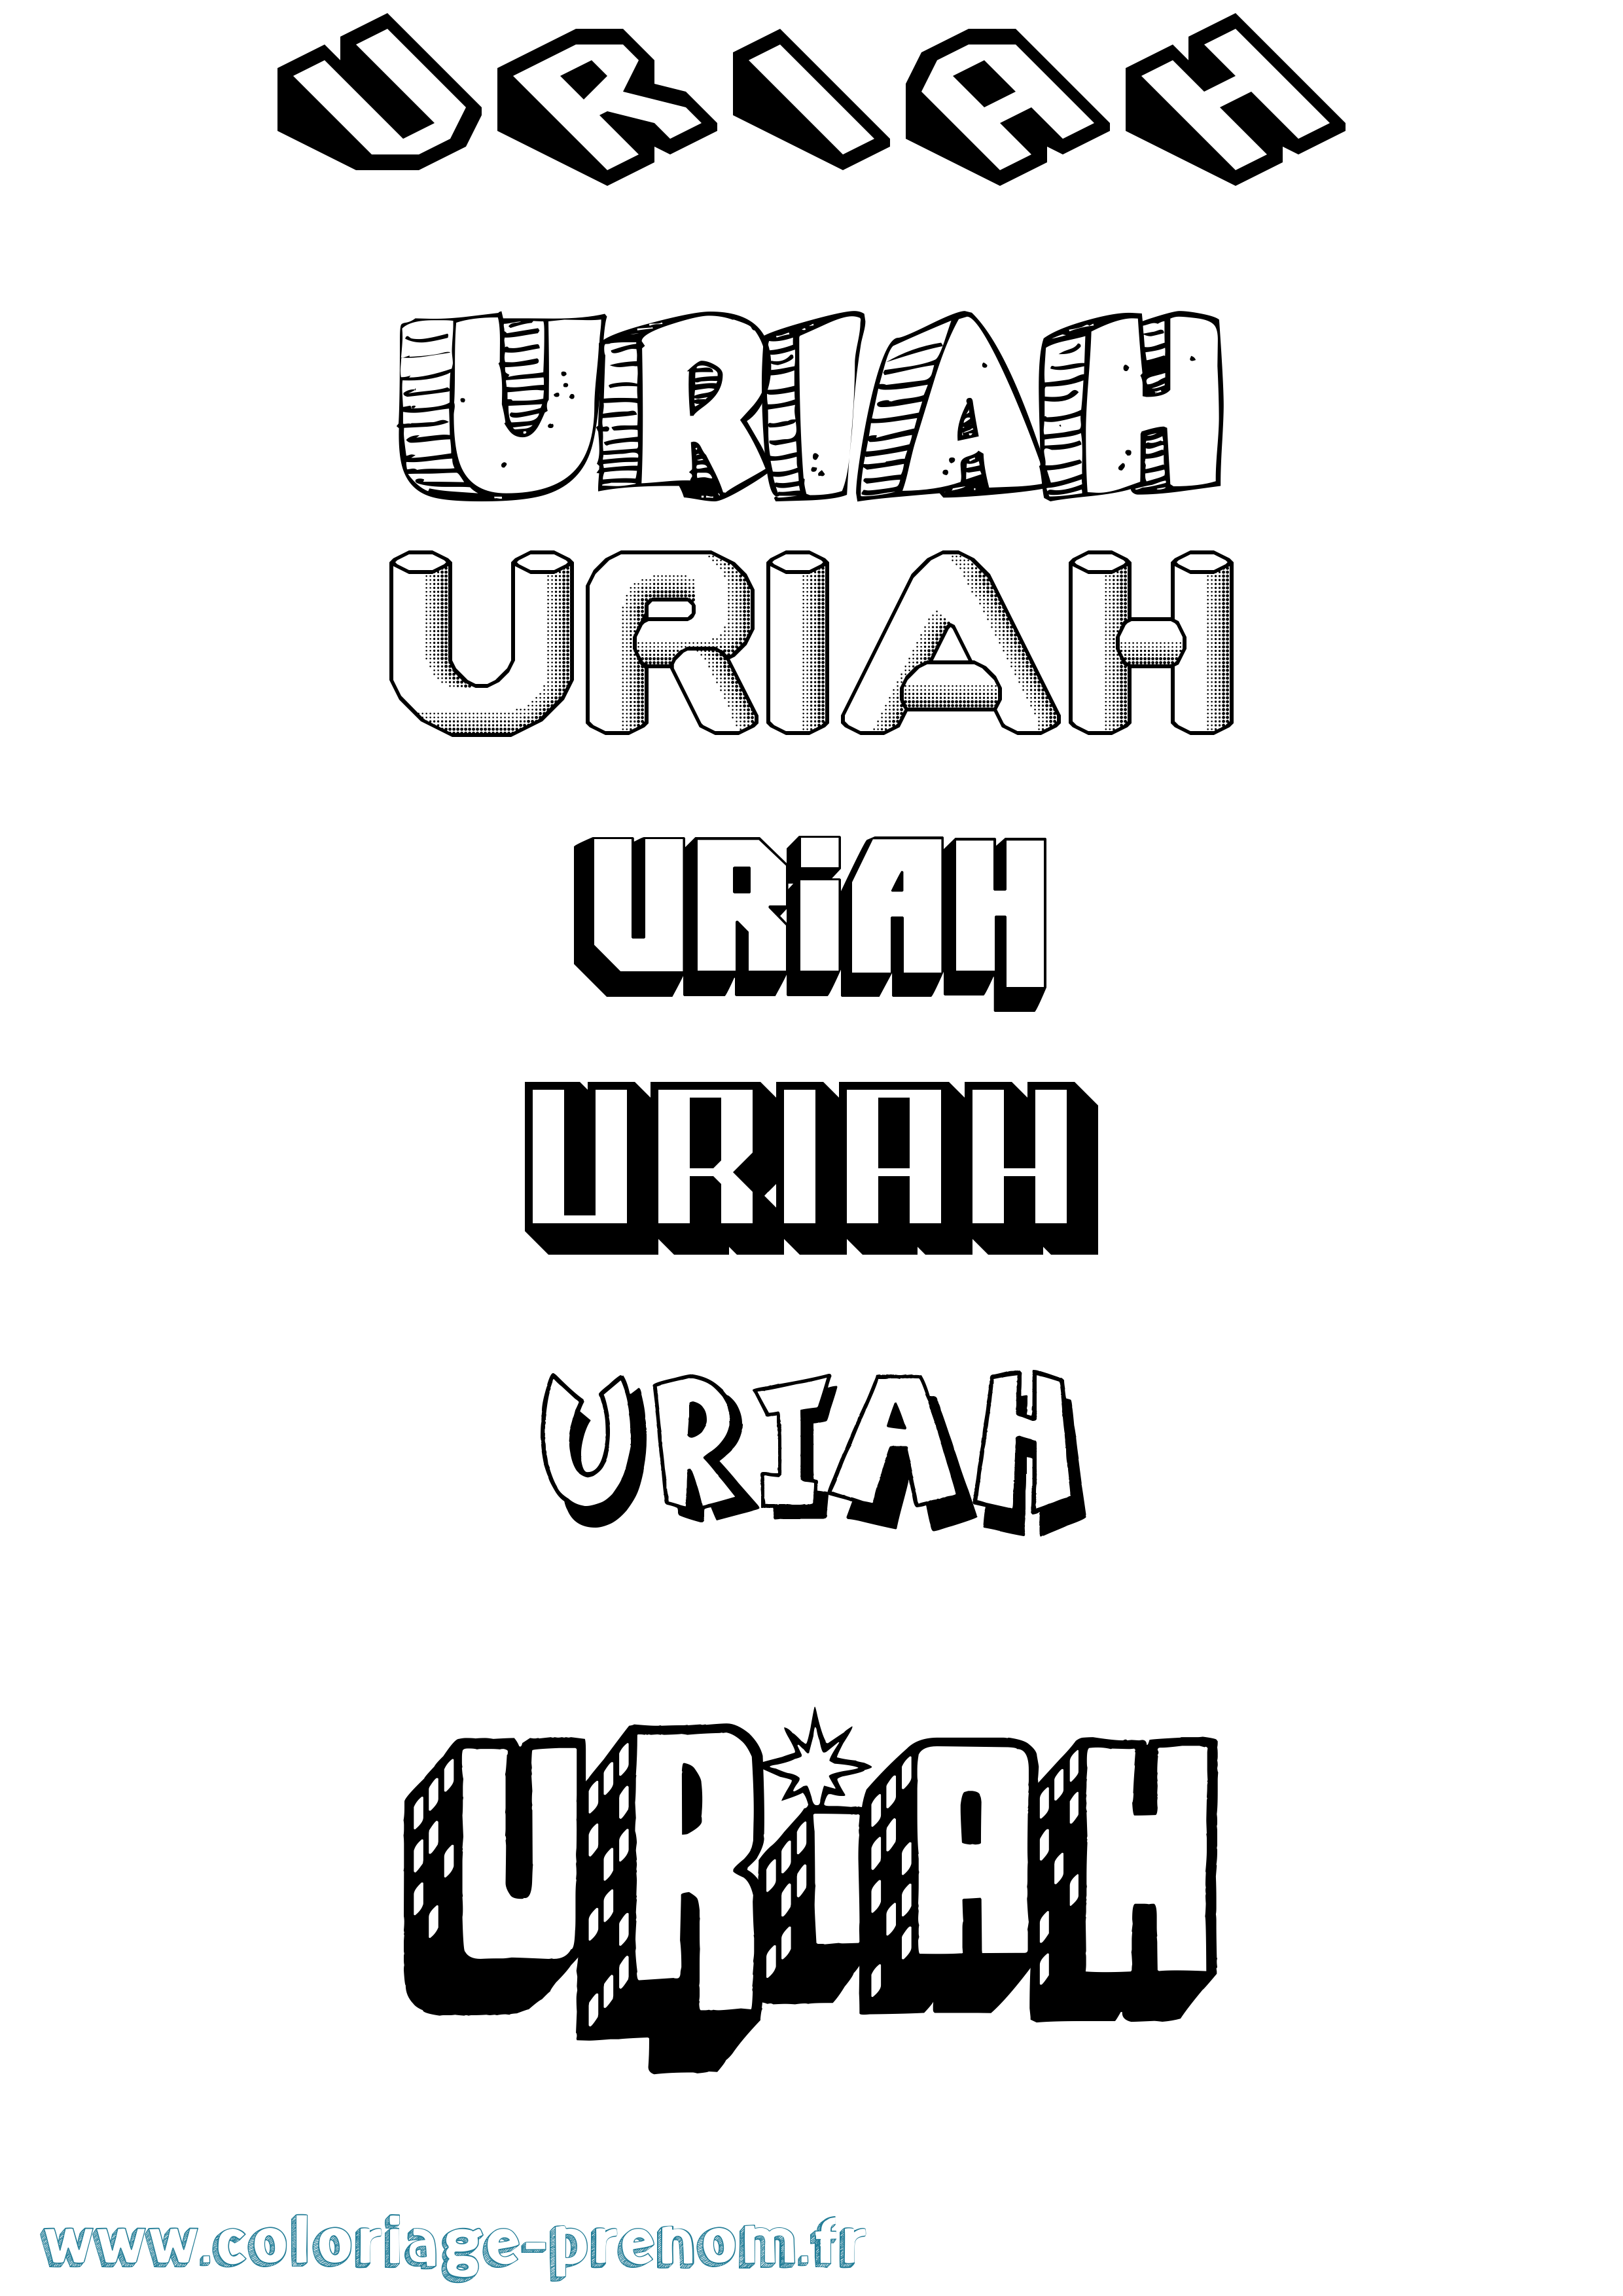 Coloriage prénom Uriah Effet 3D